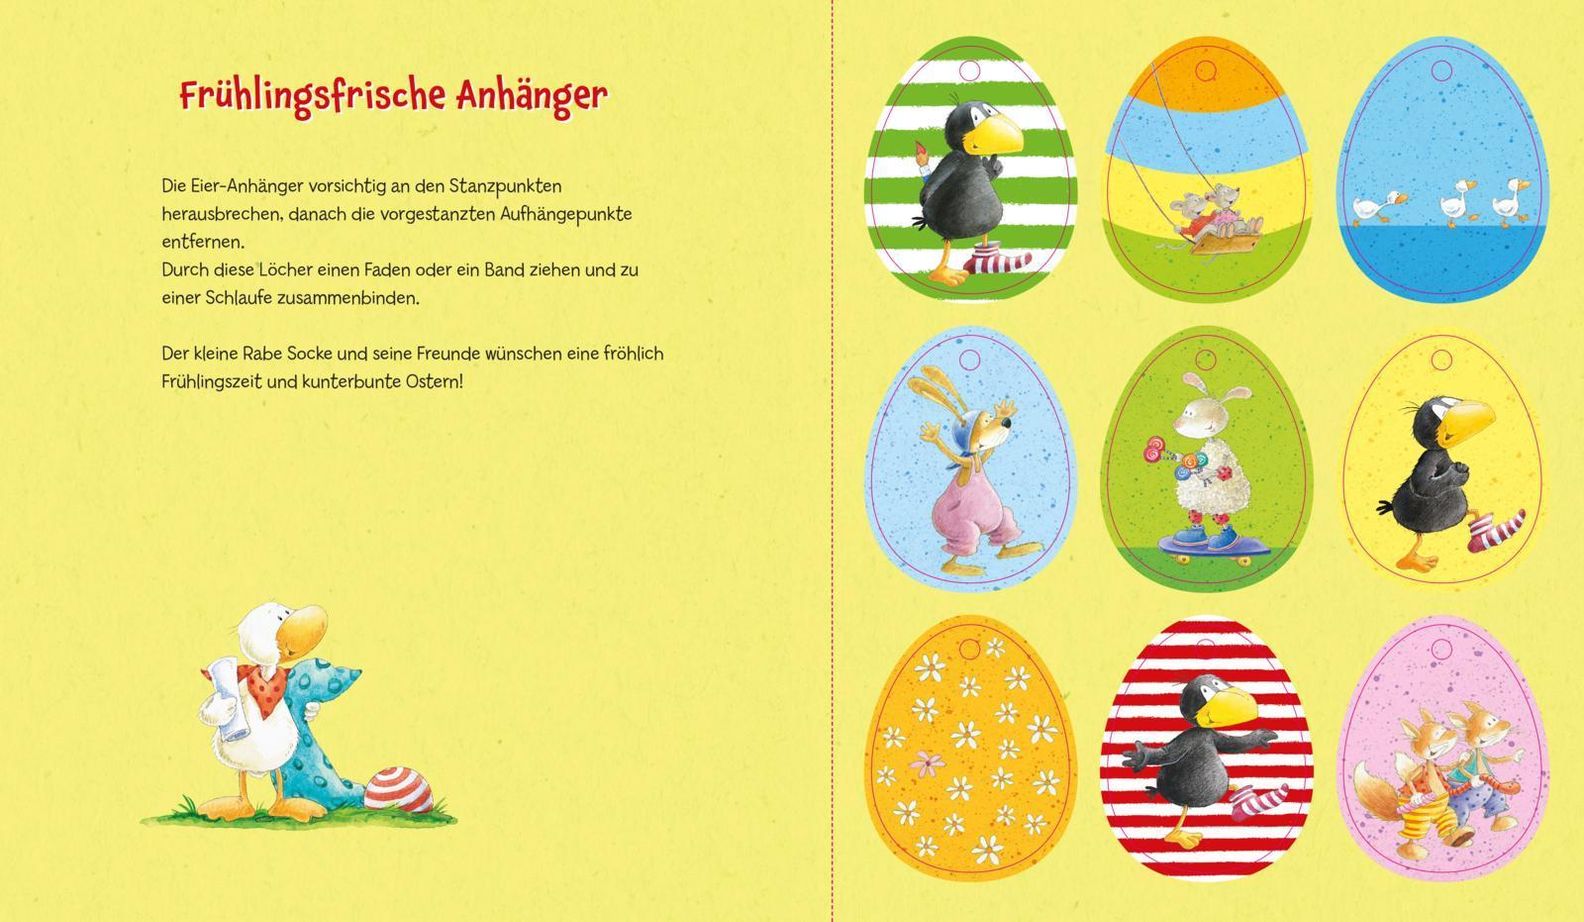 Der kleine Rabe Socke: Alles Frühling! kaufen | tausendkind.de